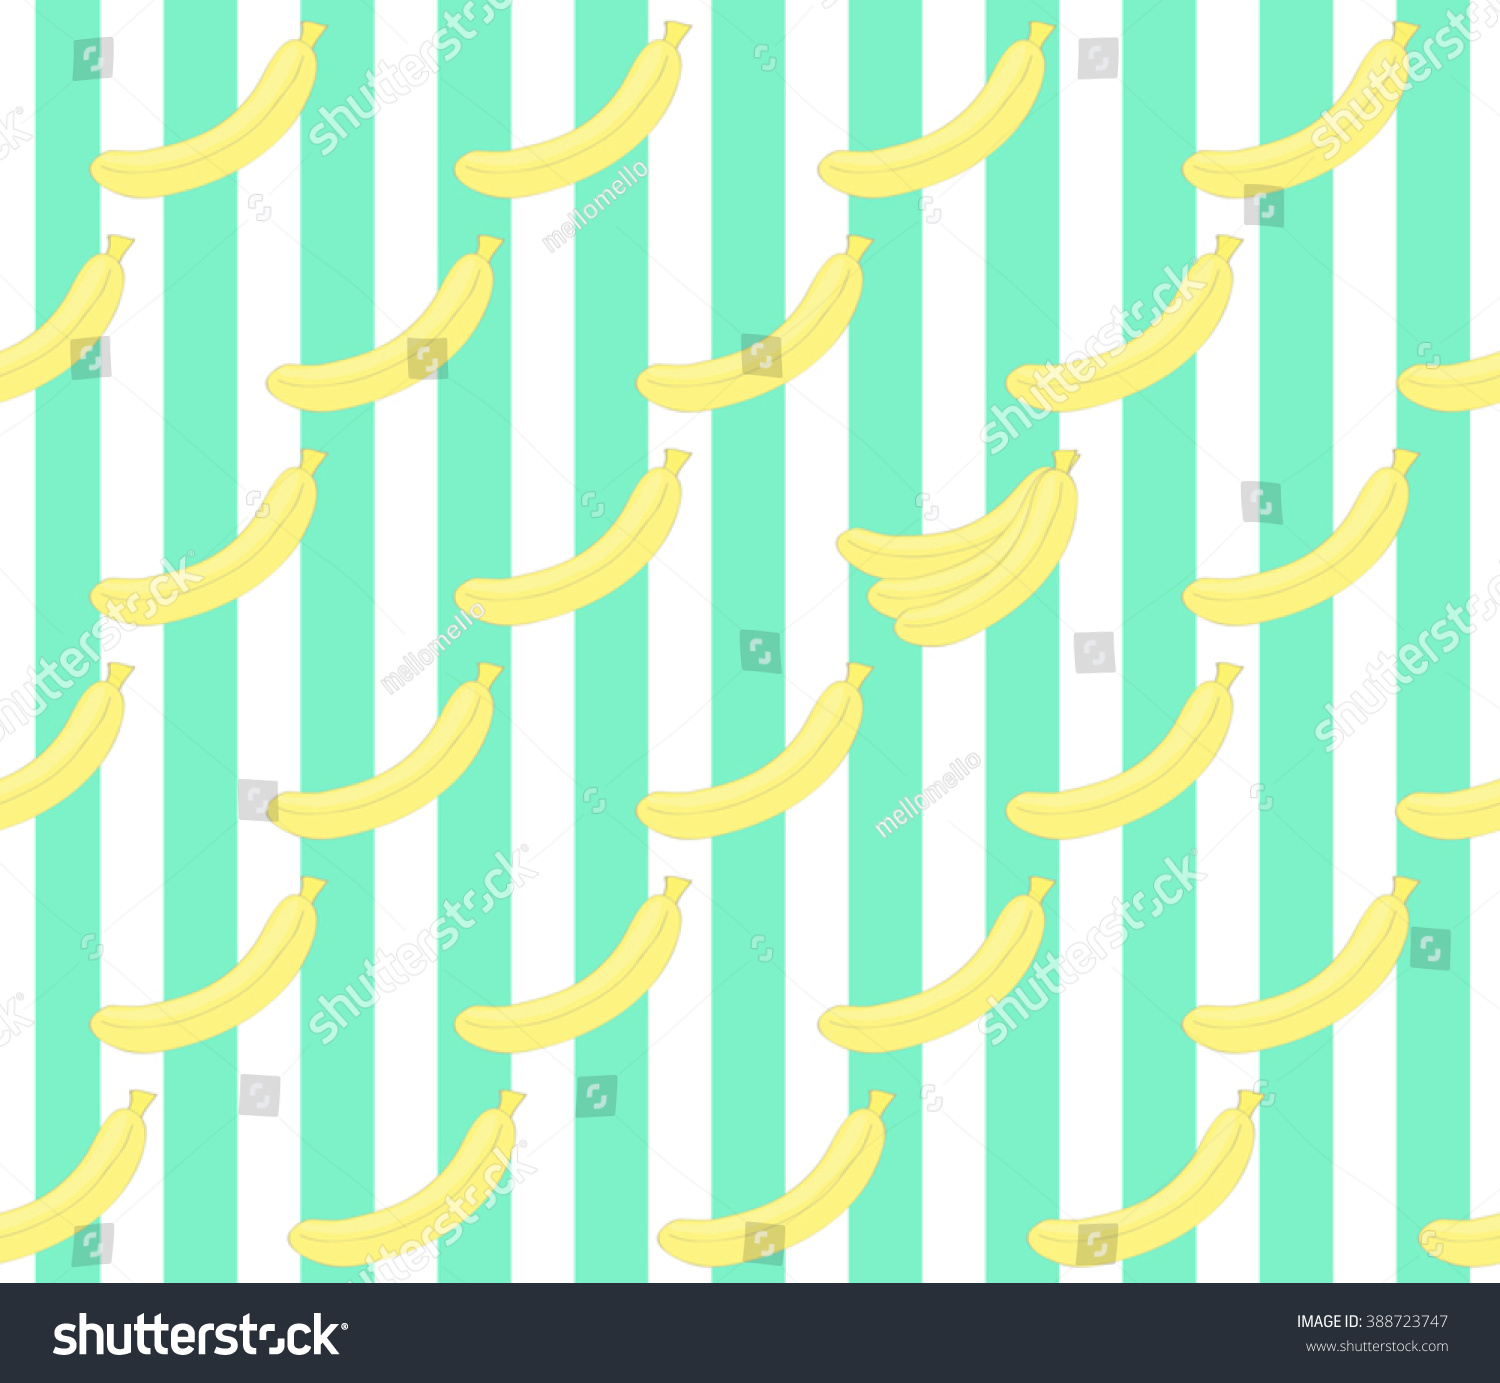 Cute Banana On Stripes Green Design Stock Vector 388723747